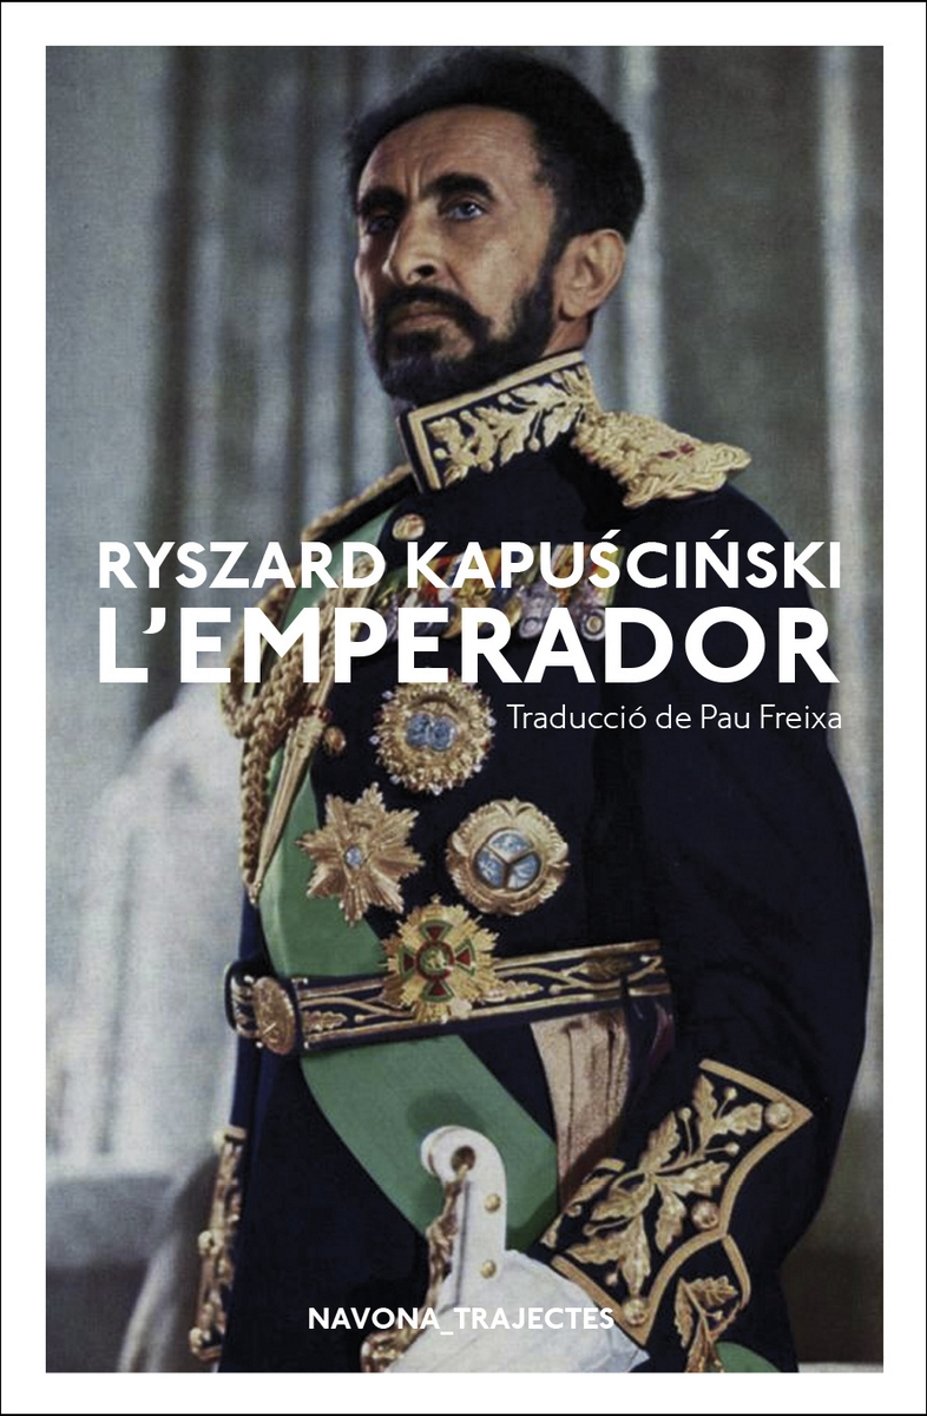 Ryszard Kapuściński, 'L'emperador'. Navona, 208 p., 17 €.